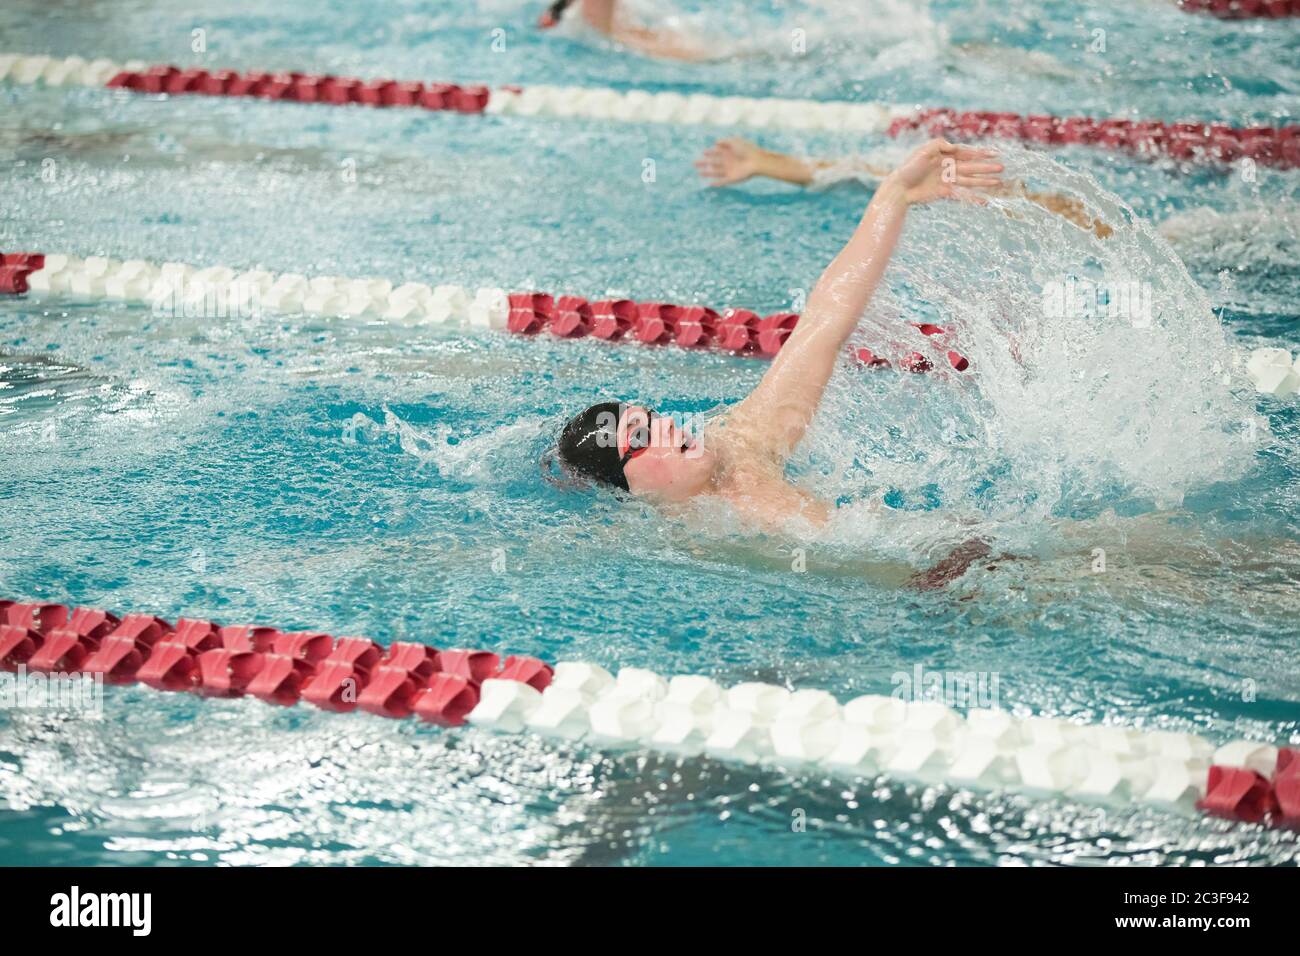 Un jeune nageur d'école secondaire nageur nage le dos pendant une rencontre de natation Banque D'Images